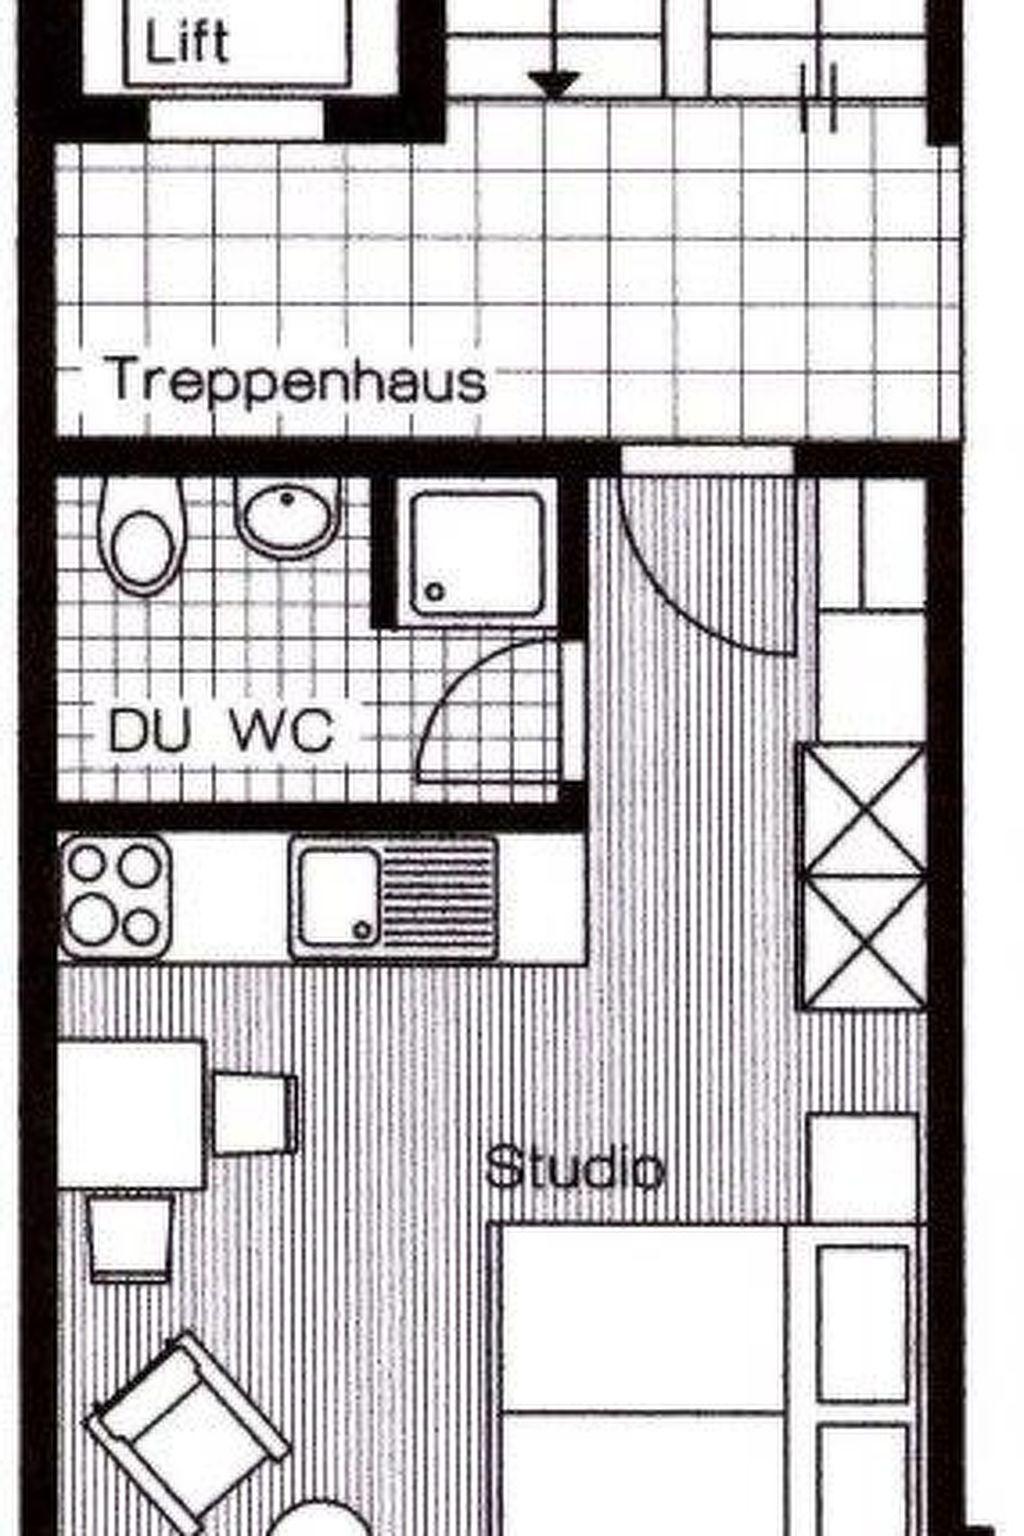 Photo 3 - 1 bedroom Apartment in Saas-Fee